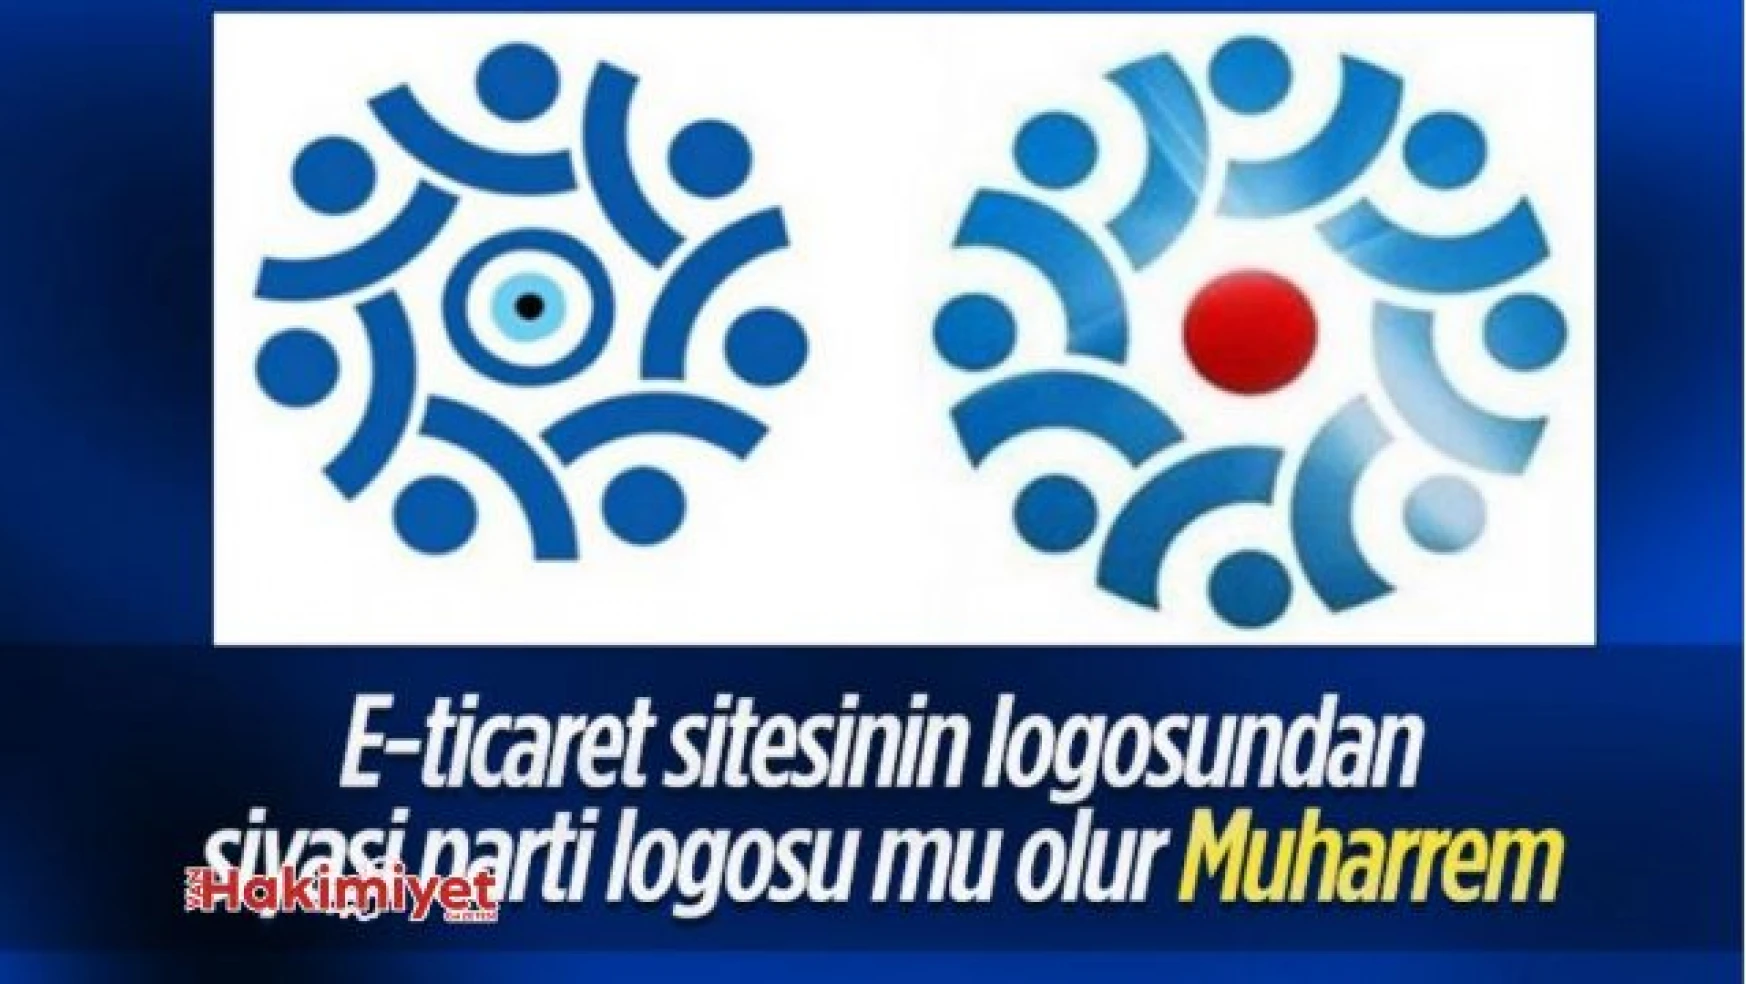 Muharrem İnce'nin parti logosu bir e-ticaret sitesinin logosuna benzetildi